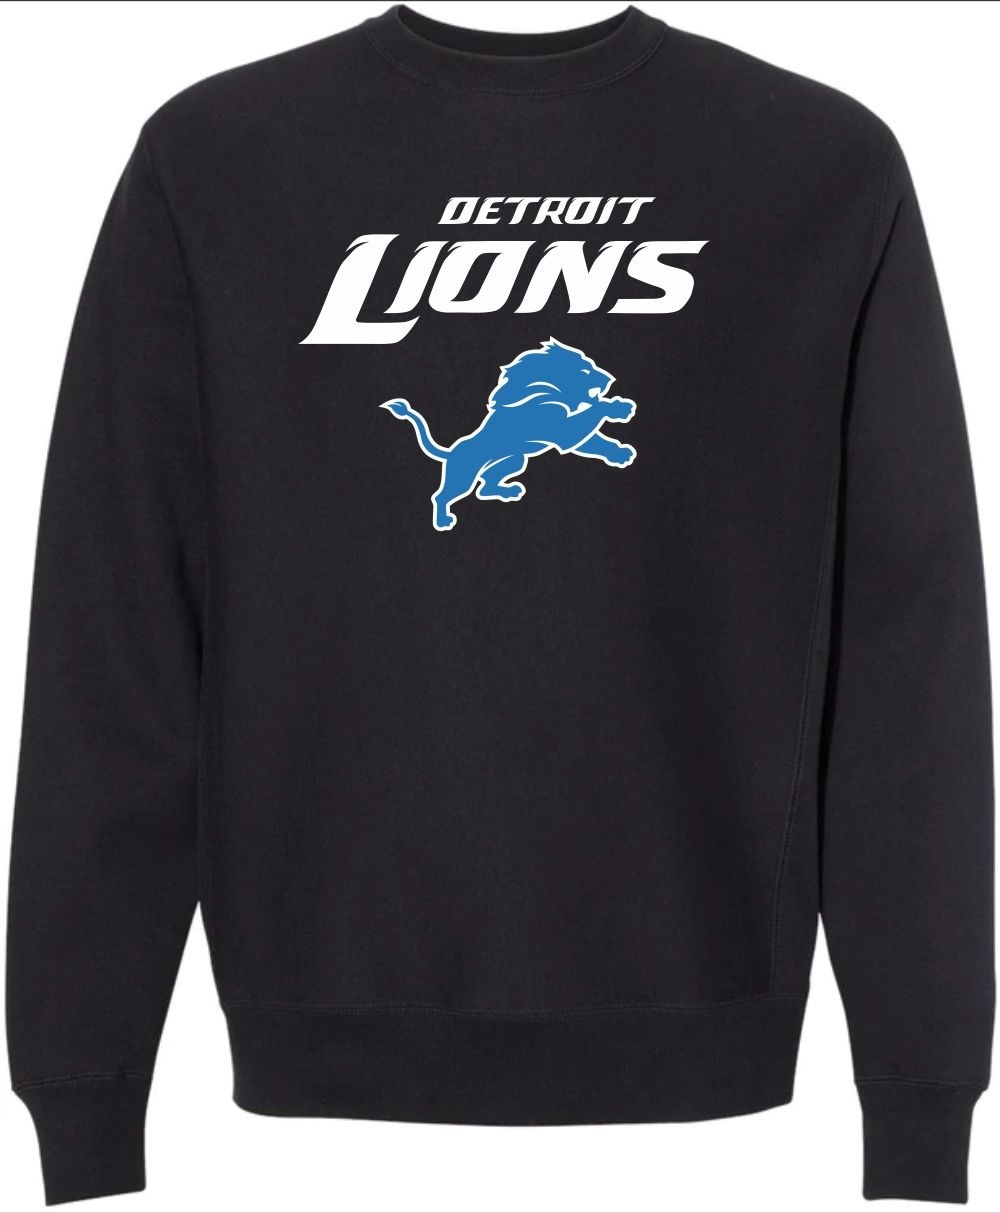 Detroit Lions Men's Black Crewneck Sweatshirt - Vintage Detroit Collection